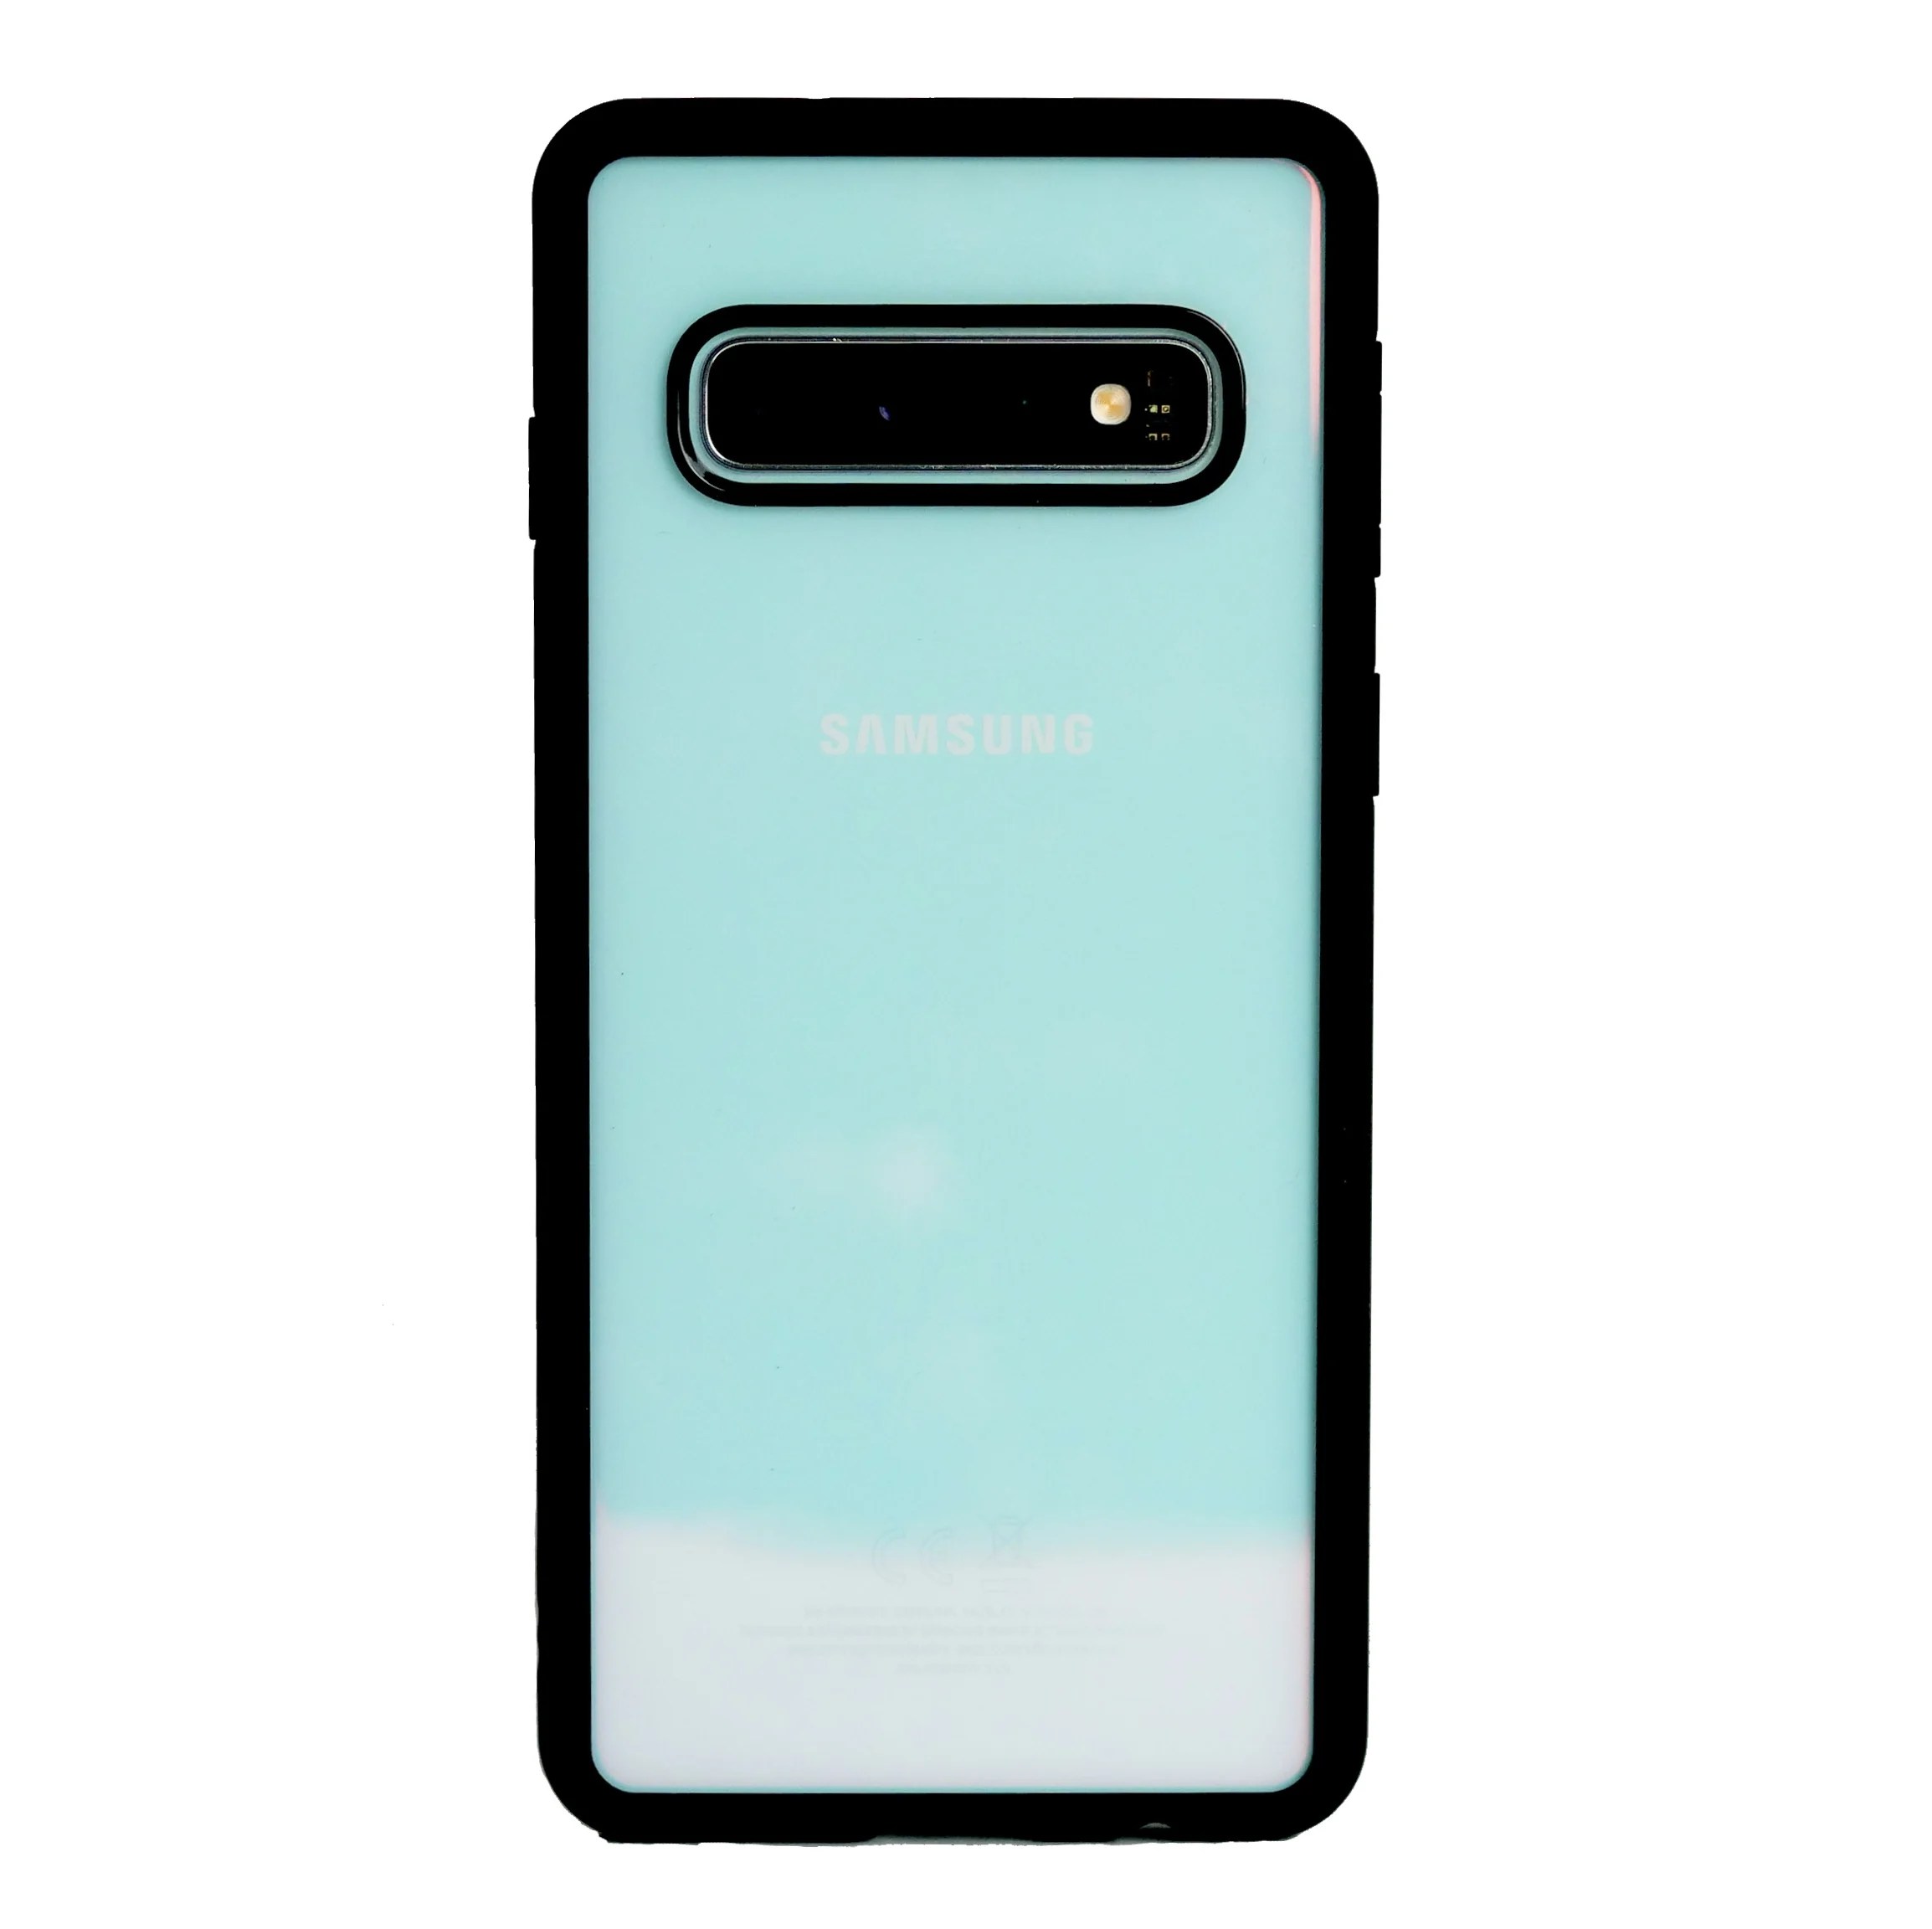 Coques Samsung Galaxy S10 : notre sélection des meilleures protections